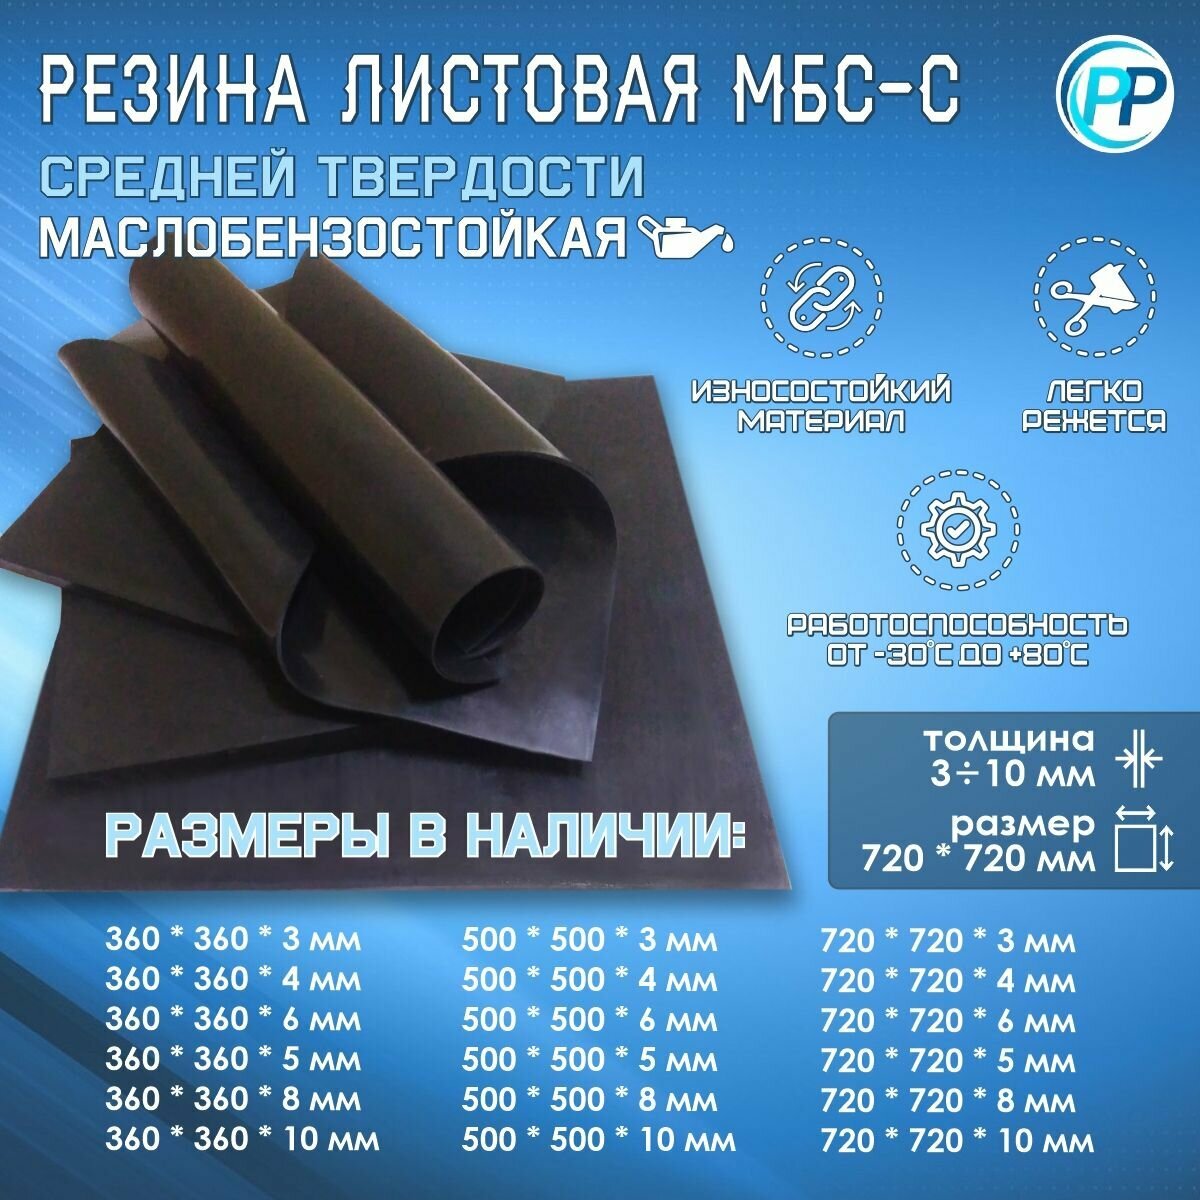 Резина листовая 2-ф 1 МБС (Маслобензостоикая) 3 мм 720х720 мм